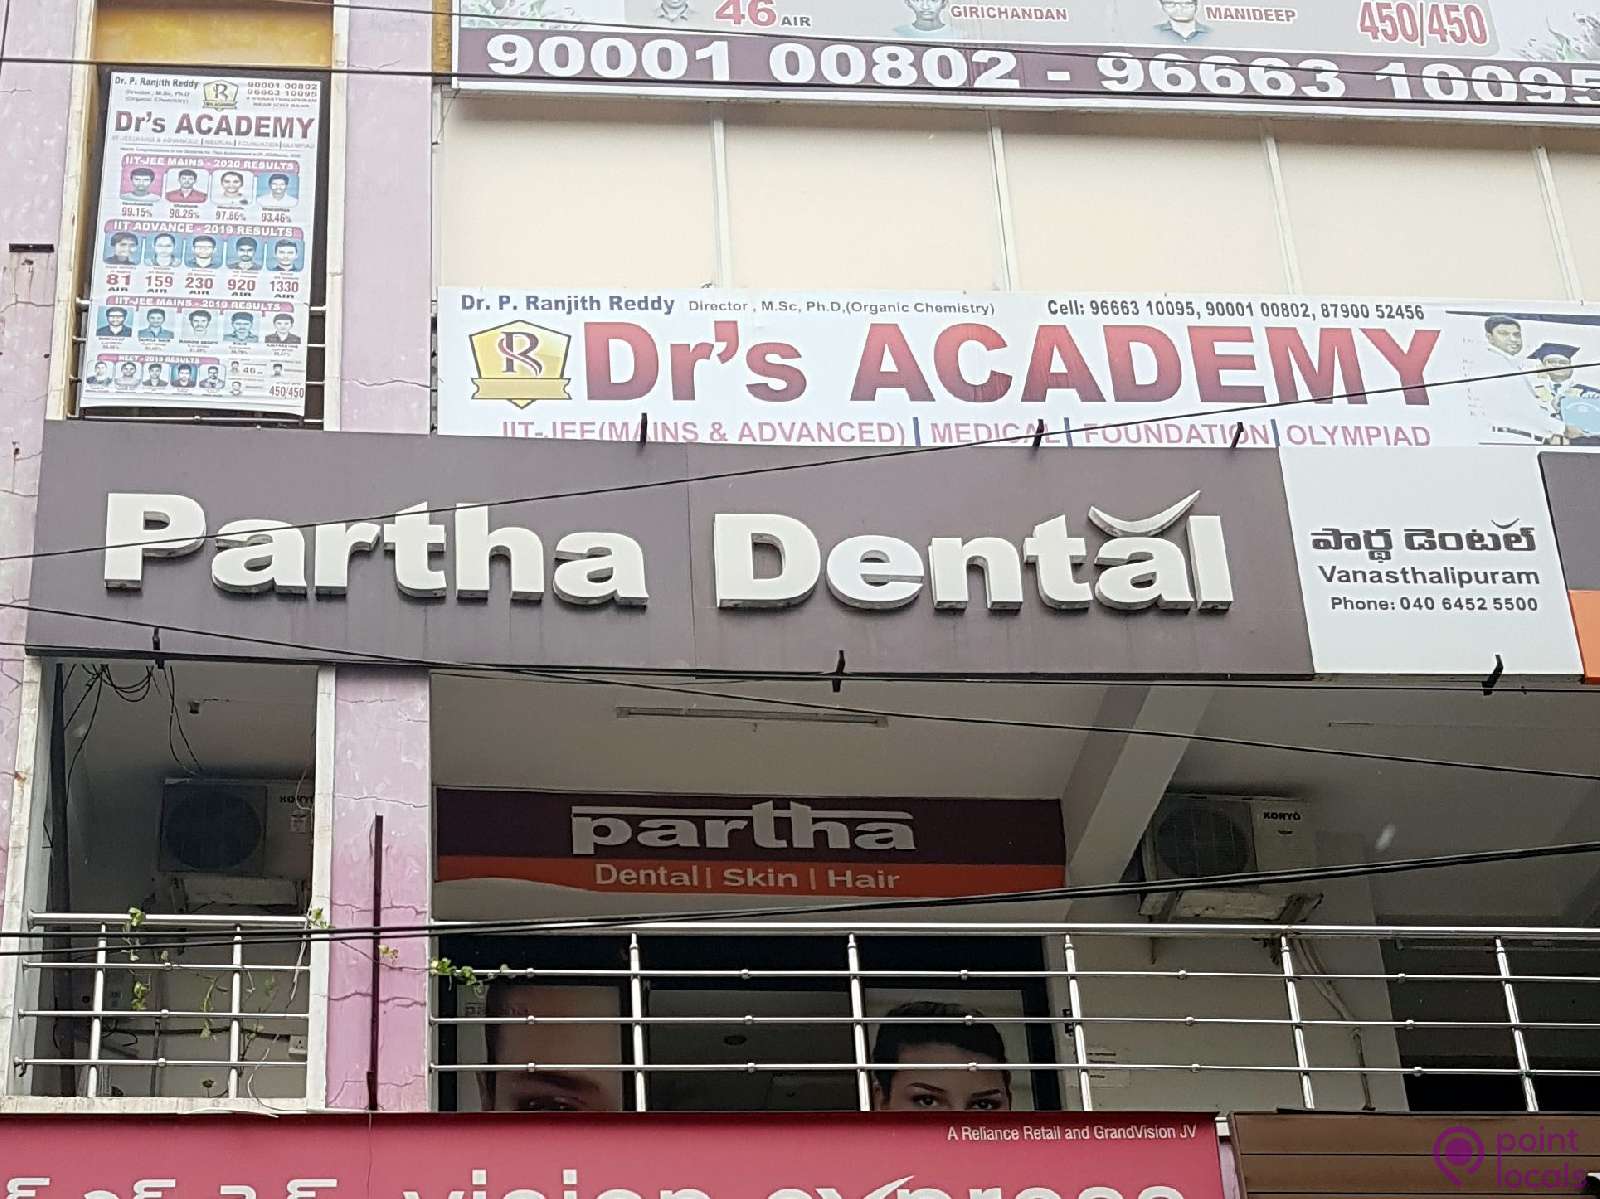 Partha Dental Dental Skin Hair - Hair Transplantation Clinic in  Vanasthalipuram,Telangana | Pointlocals